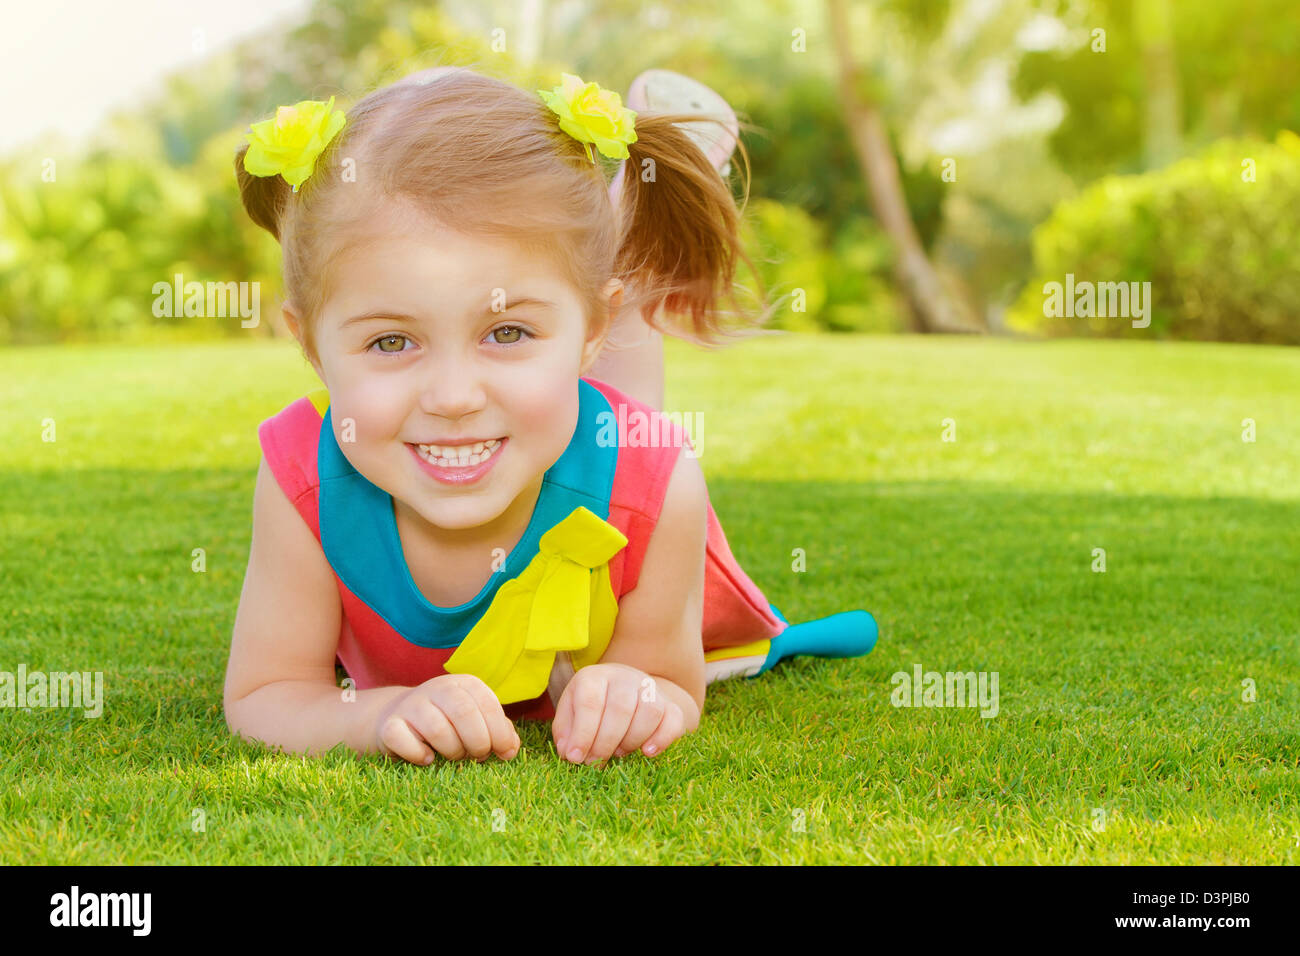 Bild der niedliche kleine Mädchen liegend auf dem grünen Rasen im Park, fröhliches Kind ruht auf dem Feld auf Hinterhof, hübsches Kind Stockfoto